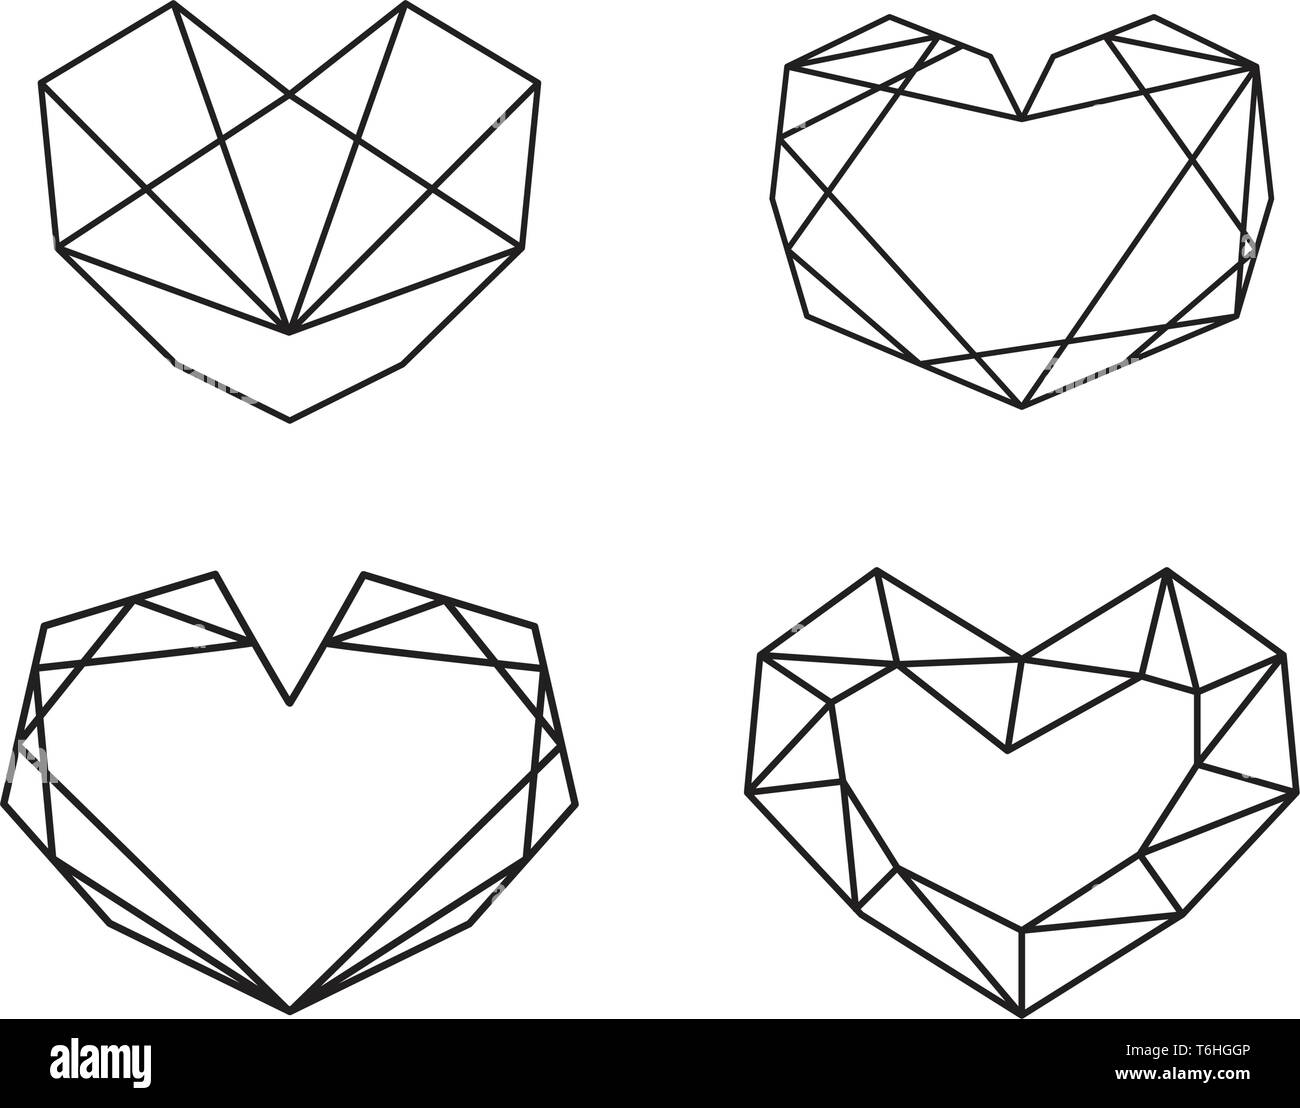 Cuore geometrica raccolta Shapes. Set di loghi di cuore nel vettore. Cuore simbolo del logo e icone il giorno di San Valentino Illustrazione Vettoriale